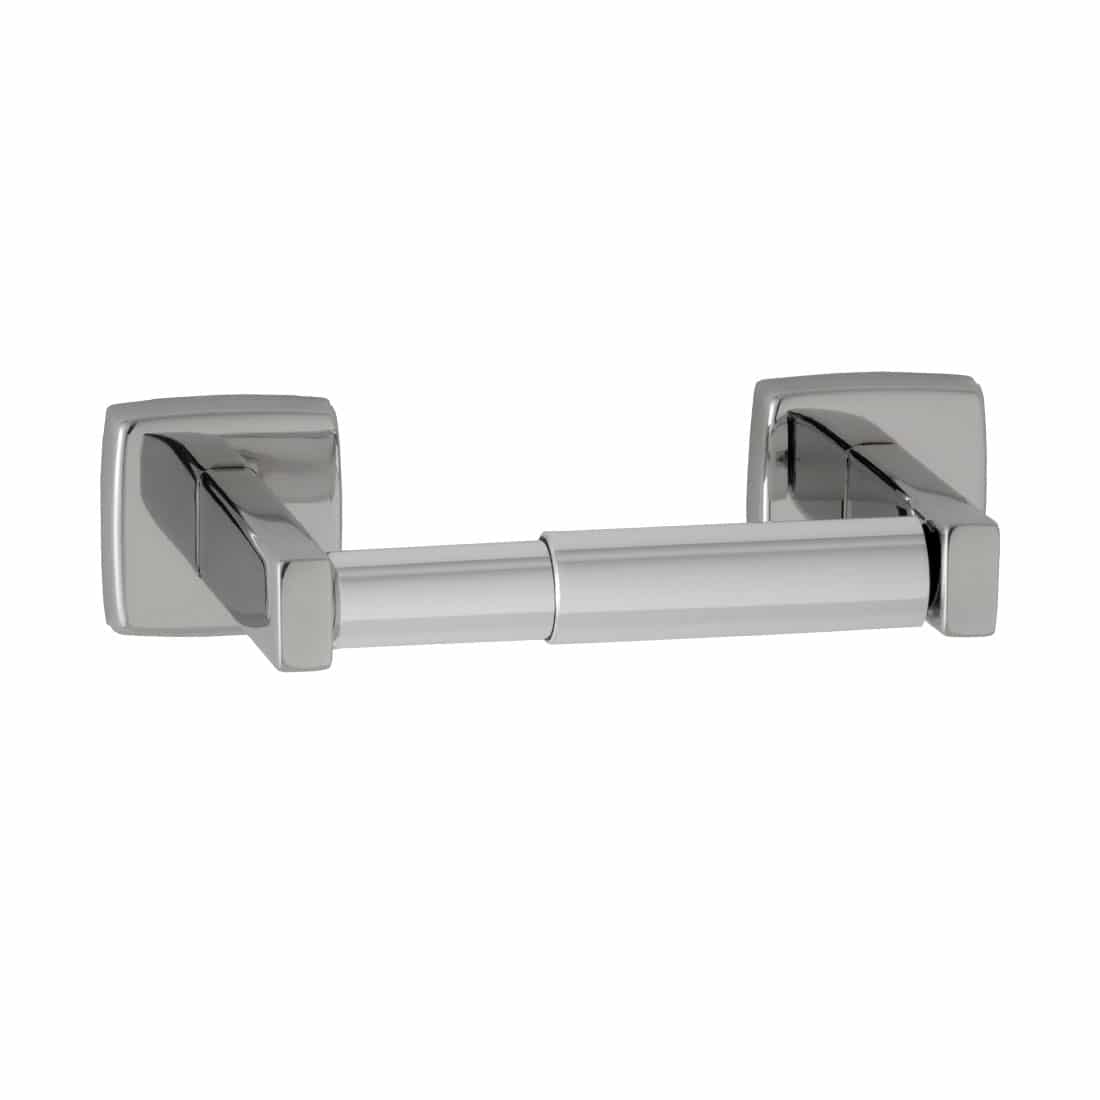 Toilet roll holder stainless steel